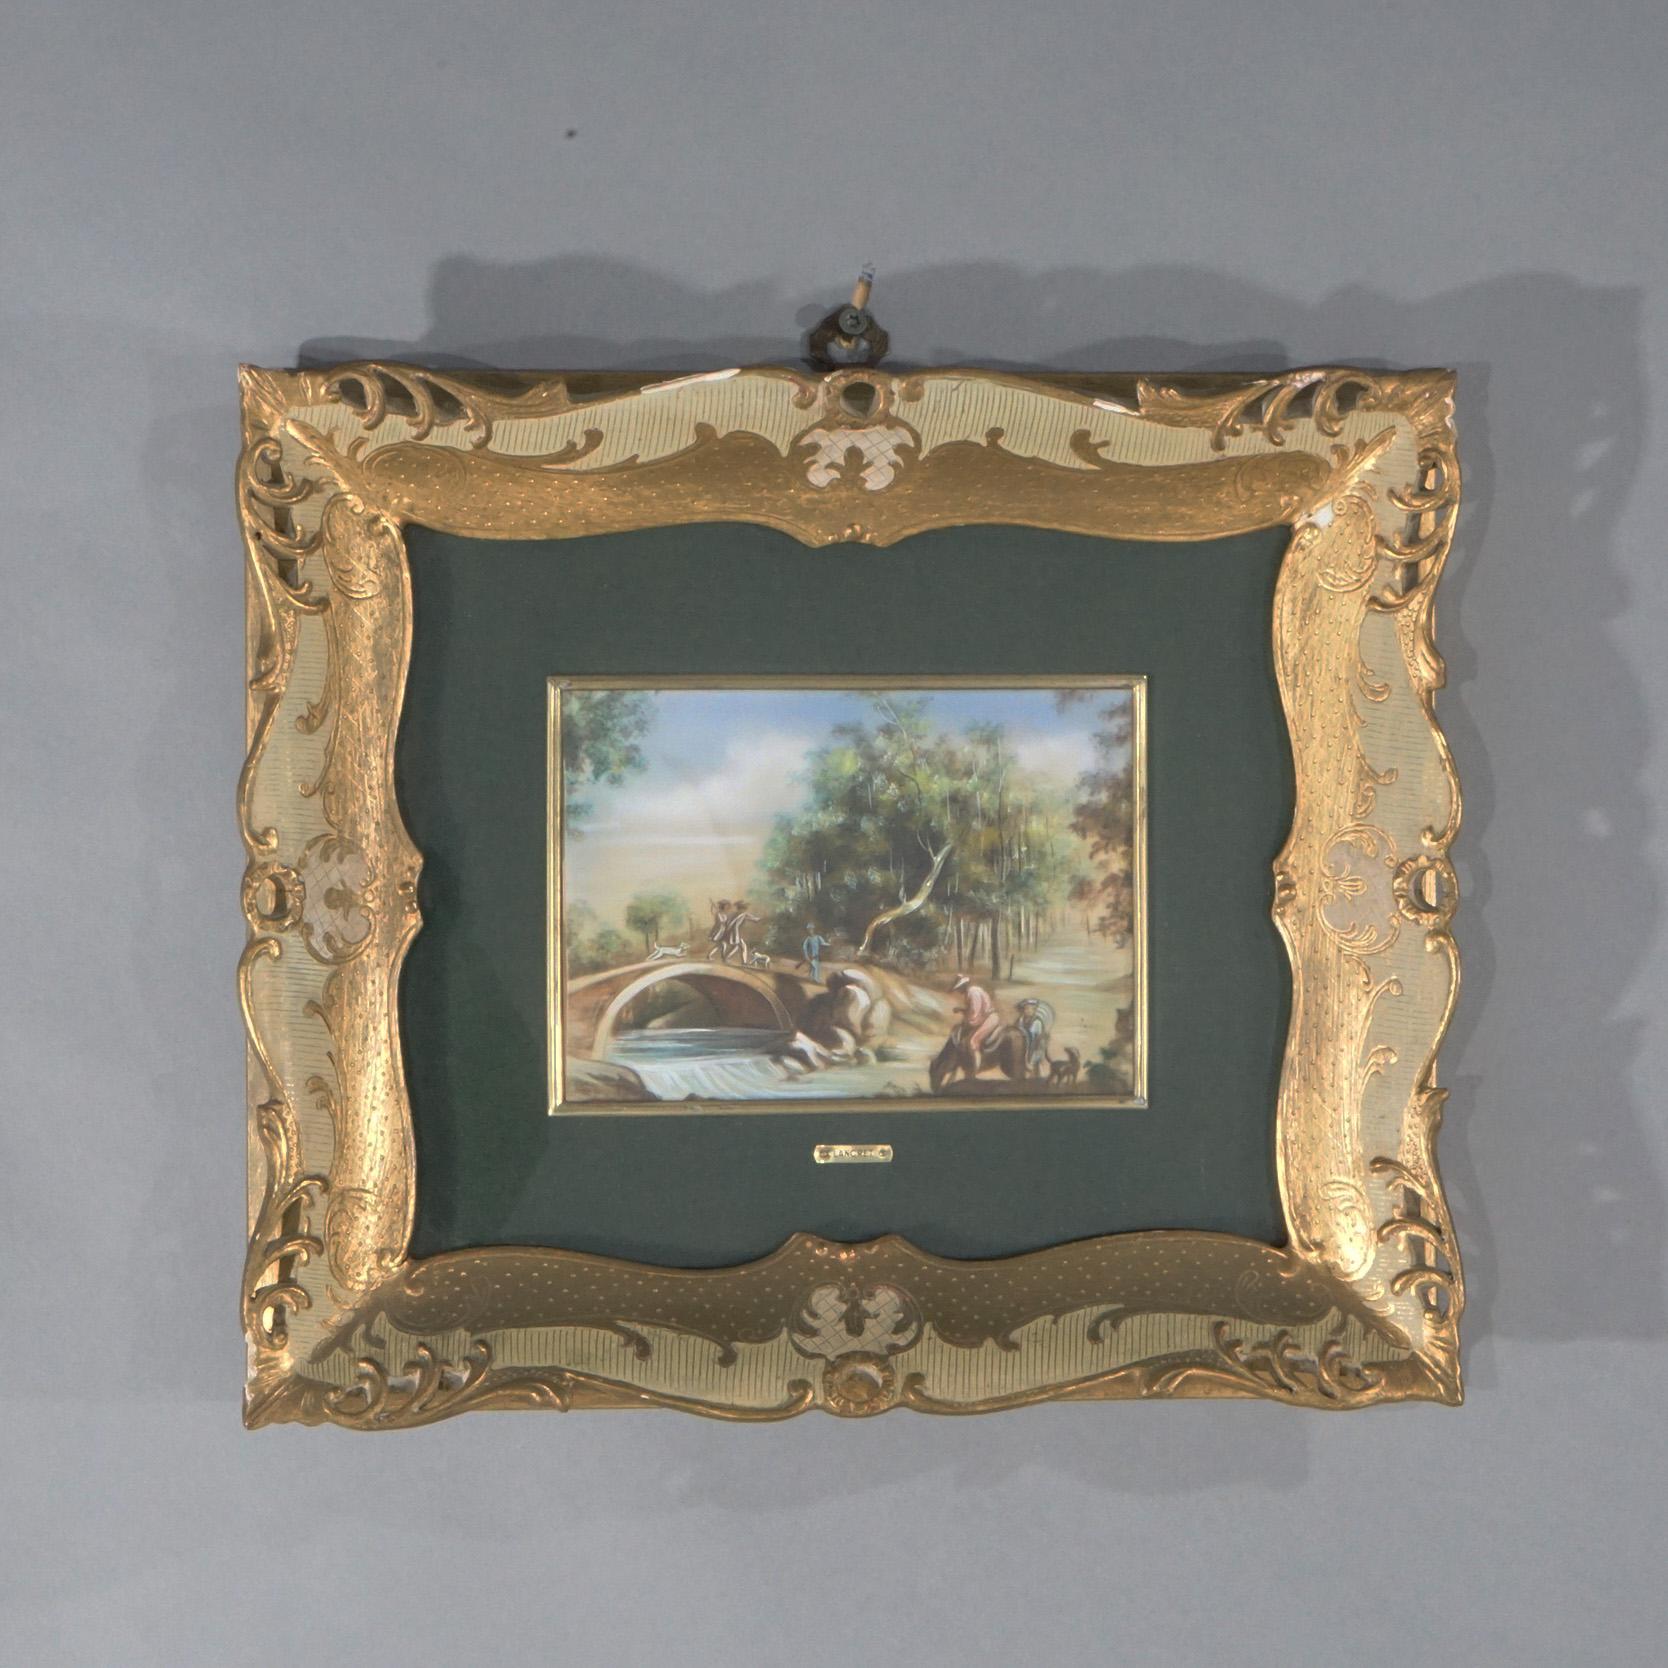 Ein antikes Paar französischer Gemälde bietet Genreszenen in Öl auf Zelluloid mit Figuren in ländlicher Umgebung, in vergoldeten Rahmen sitzend, Künstlernamenschilder wie fotografiert, um 1940.

Maße- Insgesamt 12,5''H x 14,5''W x 1,75''D.